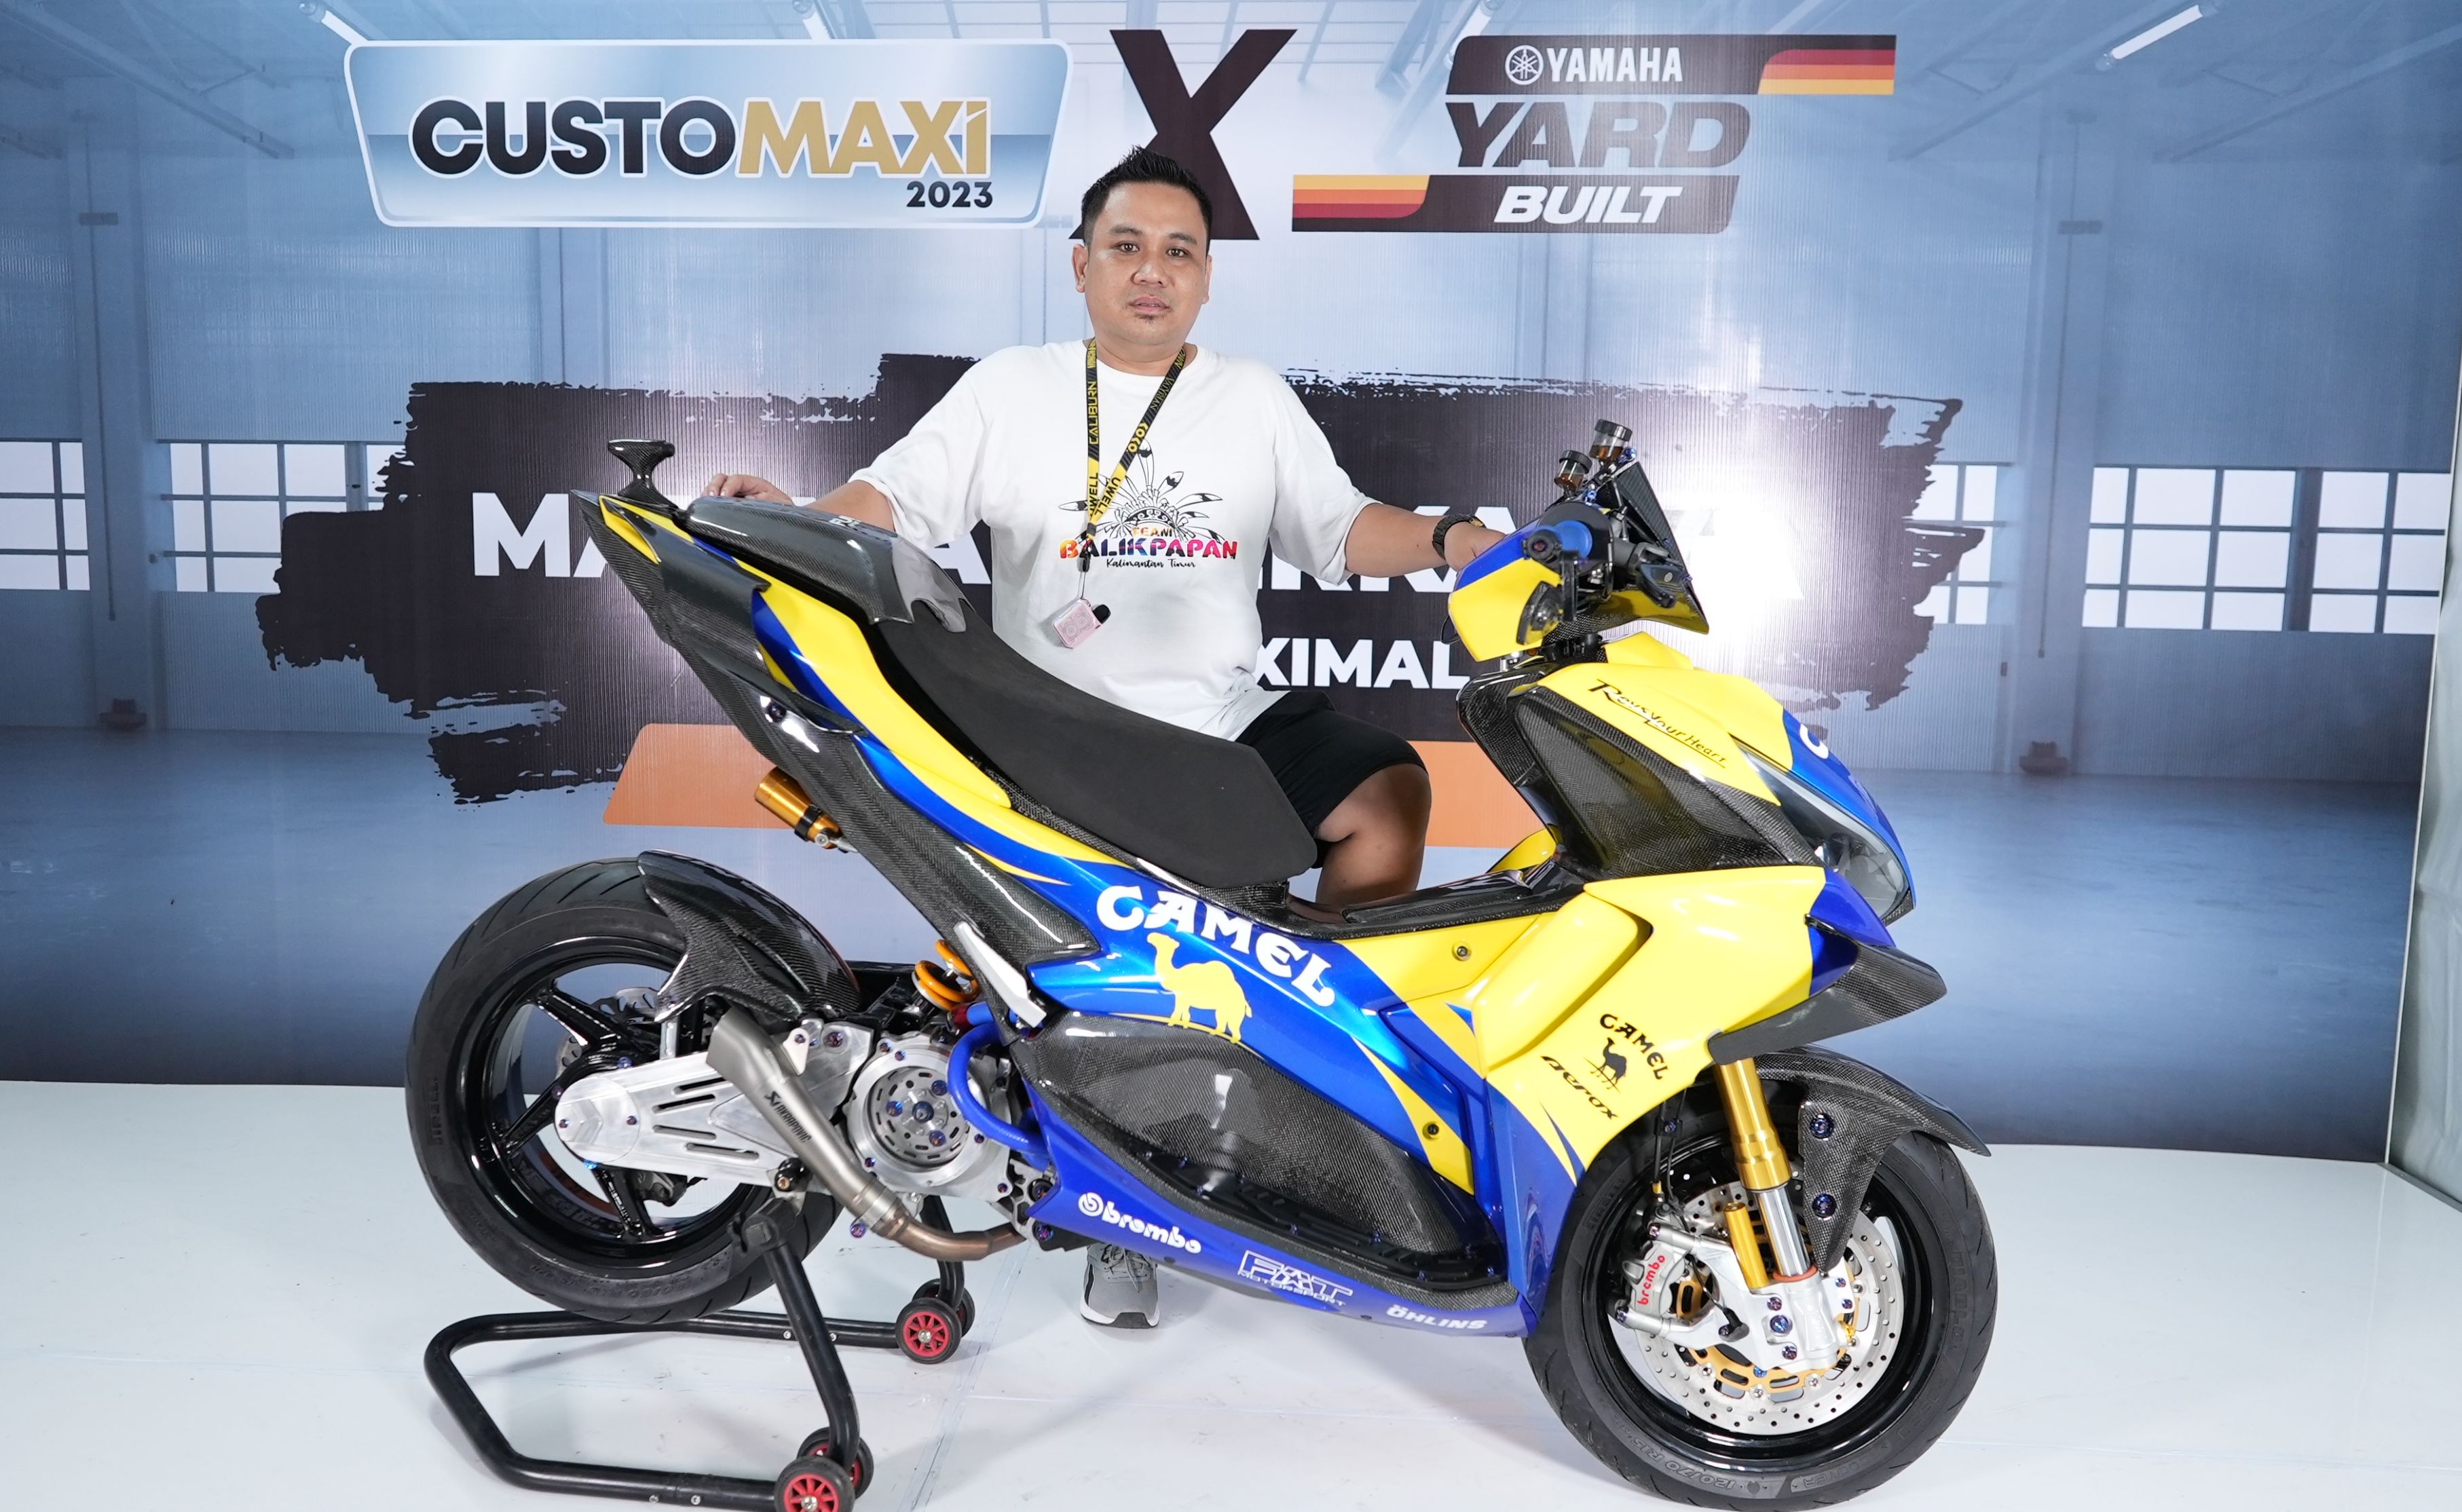 Serasa Motor Valentino Rossi, Ini Sentuhan Modifikasi Pada Yamaha Aerox yang Juarai Customaxi& Yard Built 2023